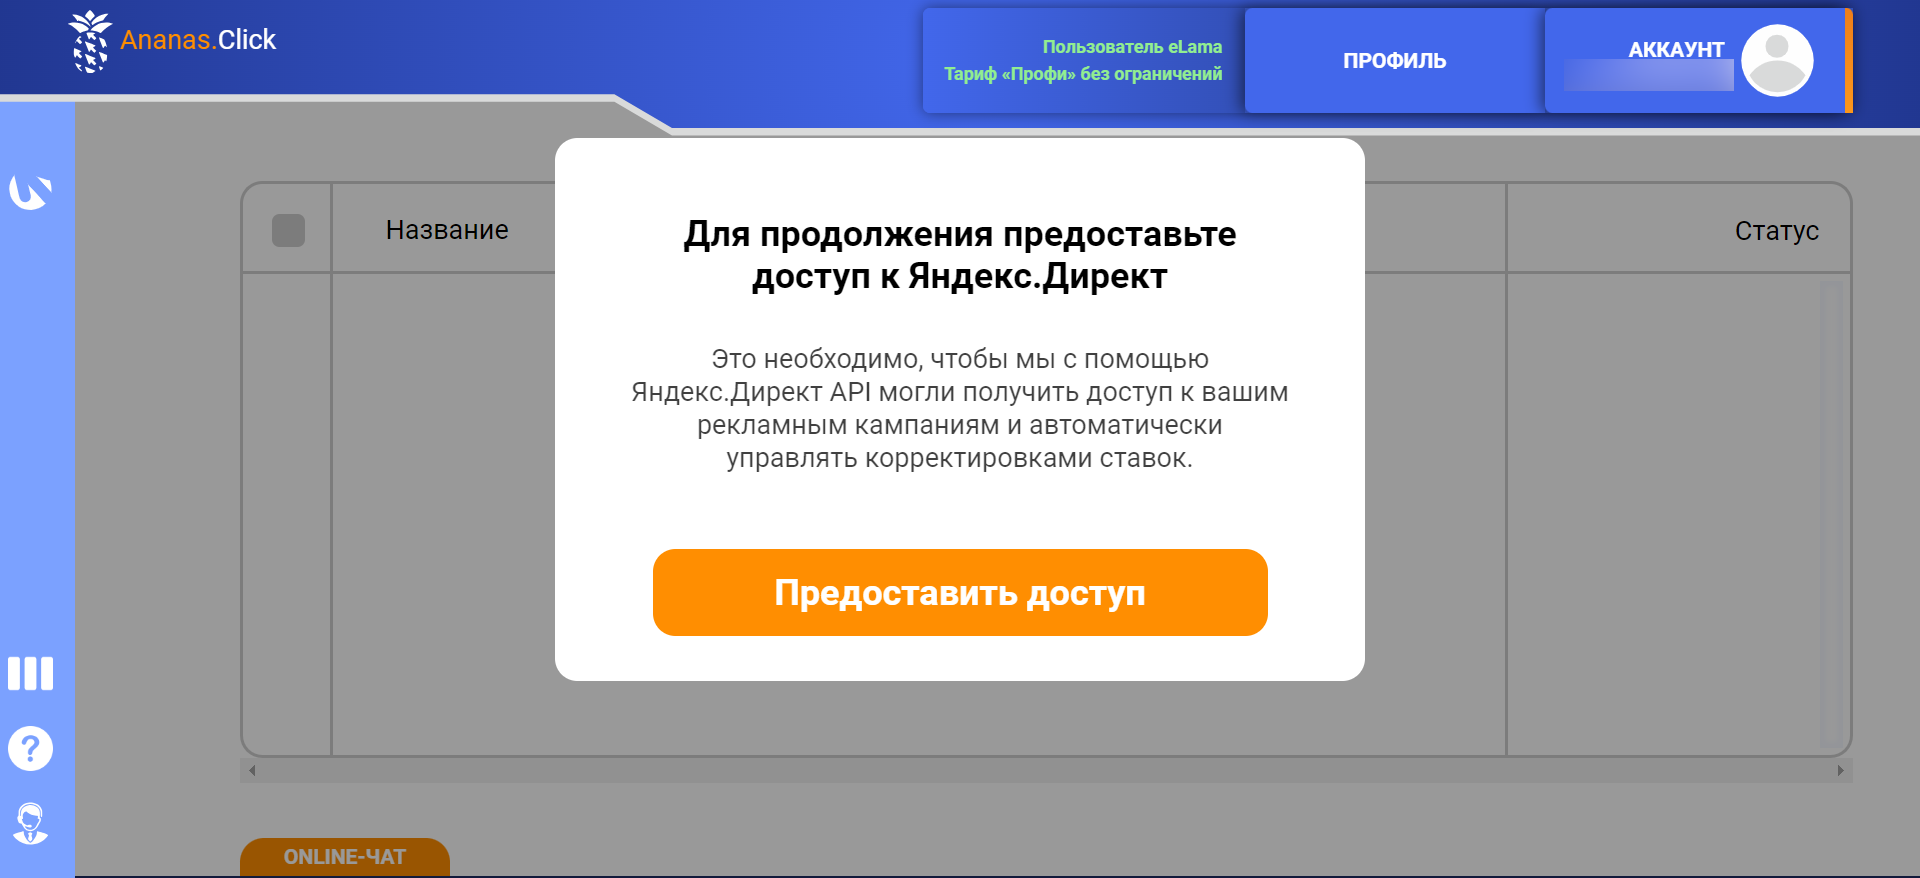 Чтобы работать с кампаниями, необходимо предоставить доступ к аккаунту в Яндекс Директе 